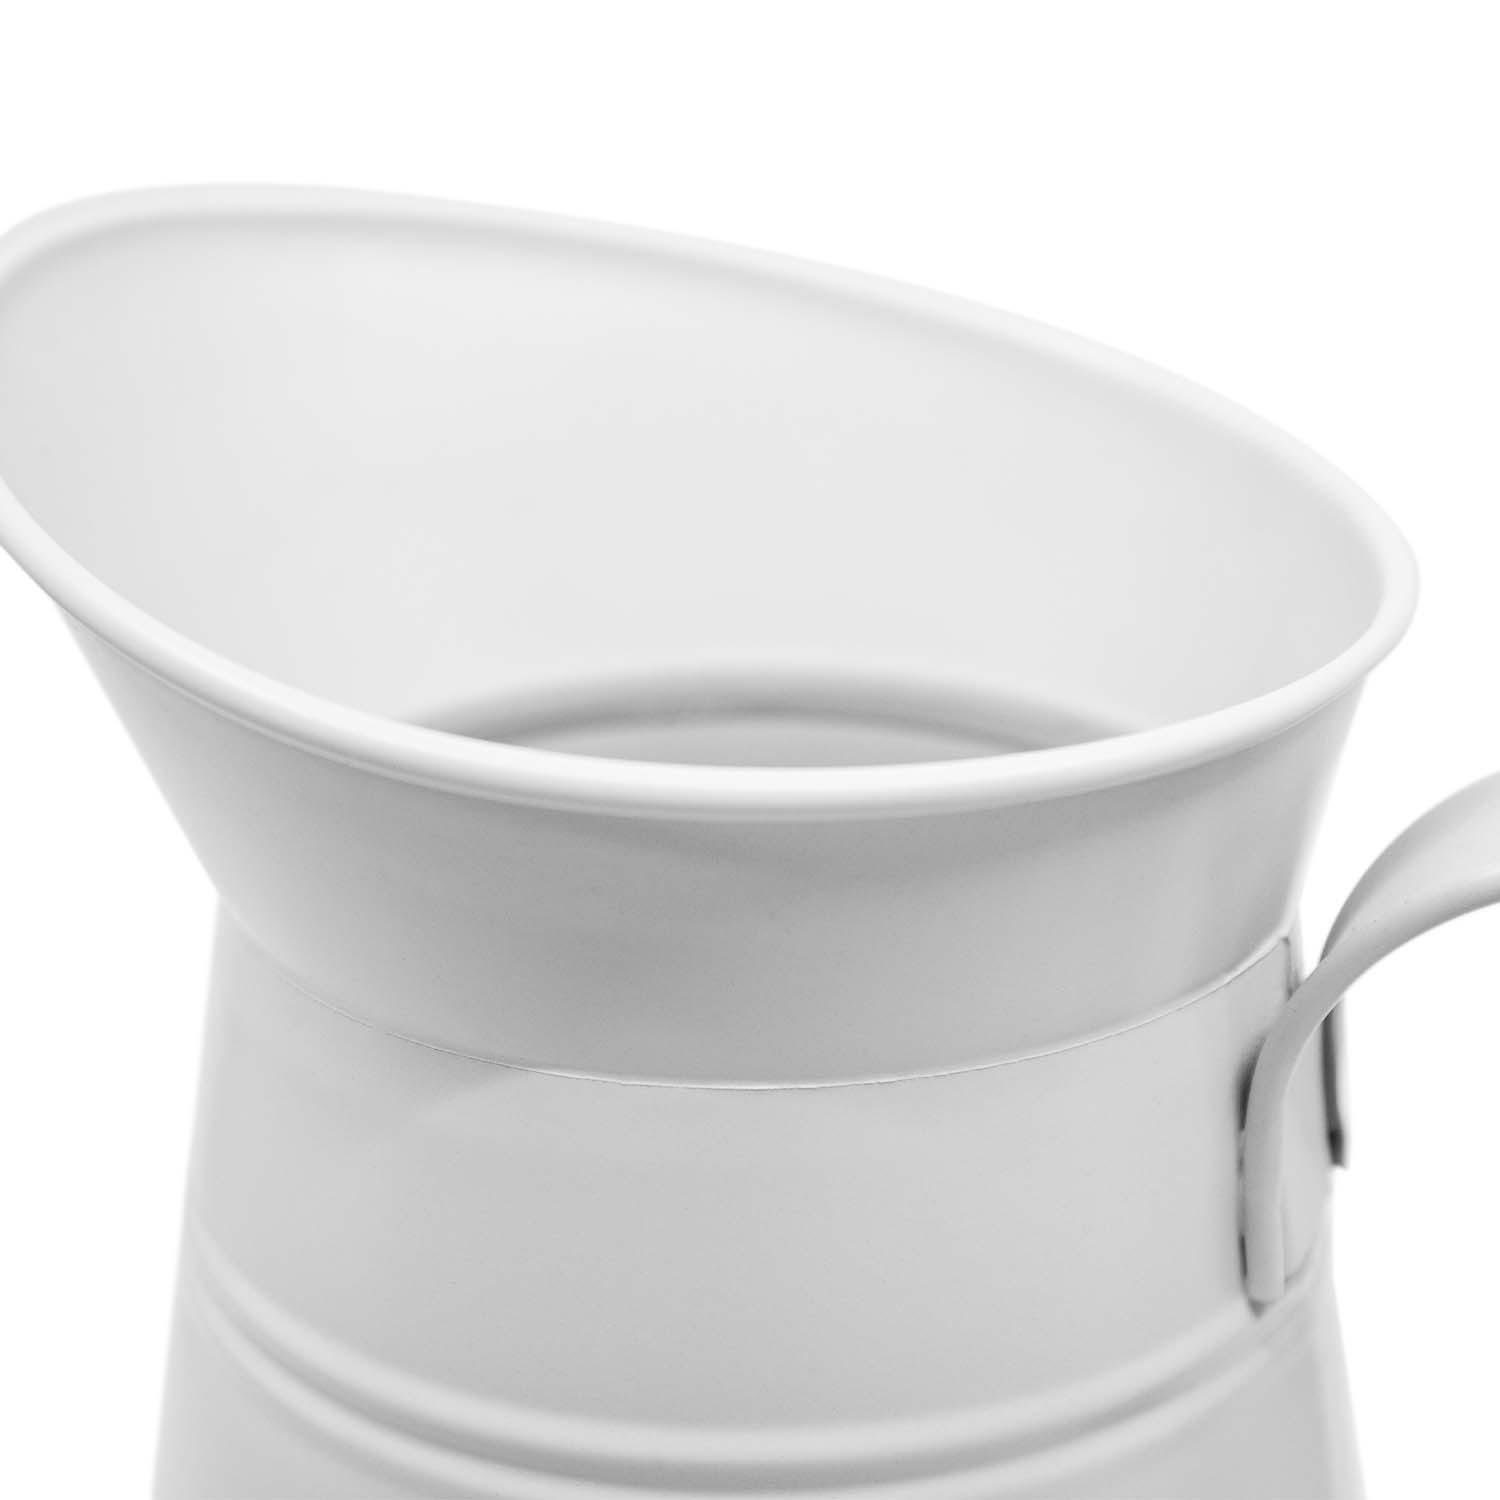 2-tlg), Thermoholzbürste weiß Nylon wechselbarer dunkel WC-Bürstengarnitur WC-Garnitur Bürstenkopf Toilettenbürste, rund WC-Kanne Redecker Bürste (Komplett-Set,